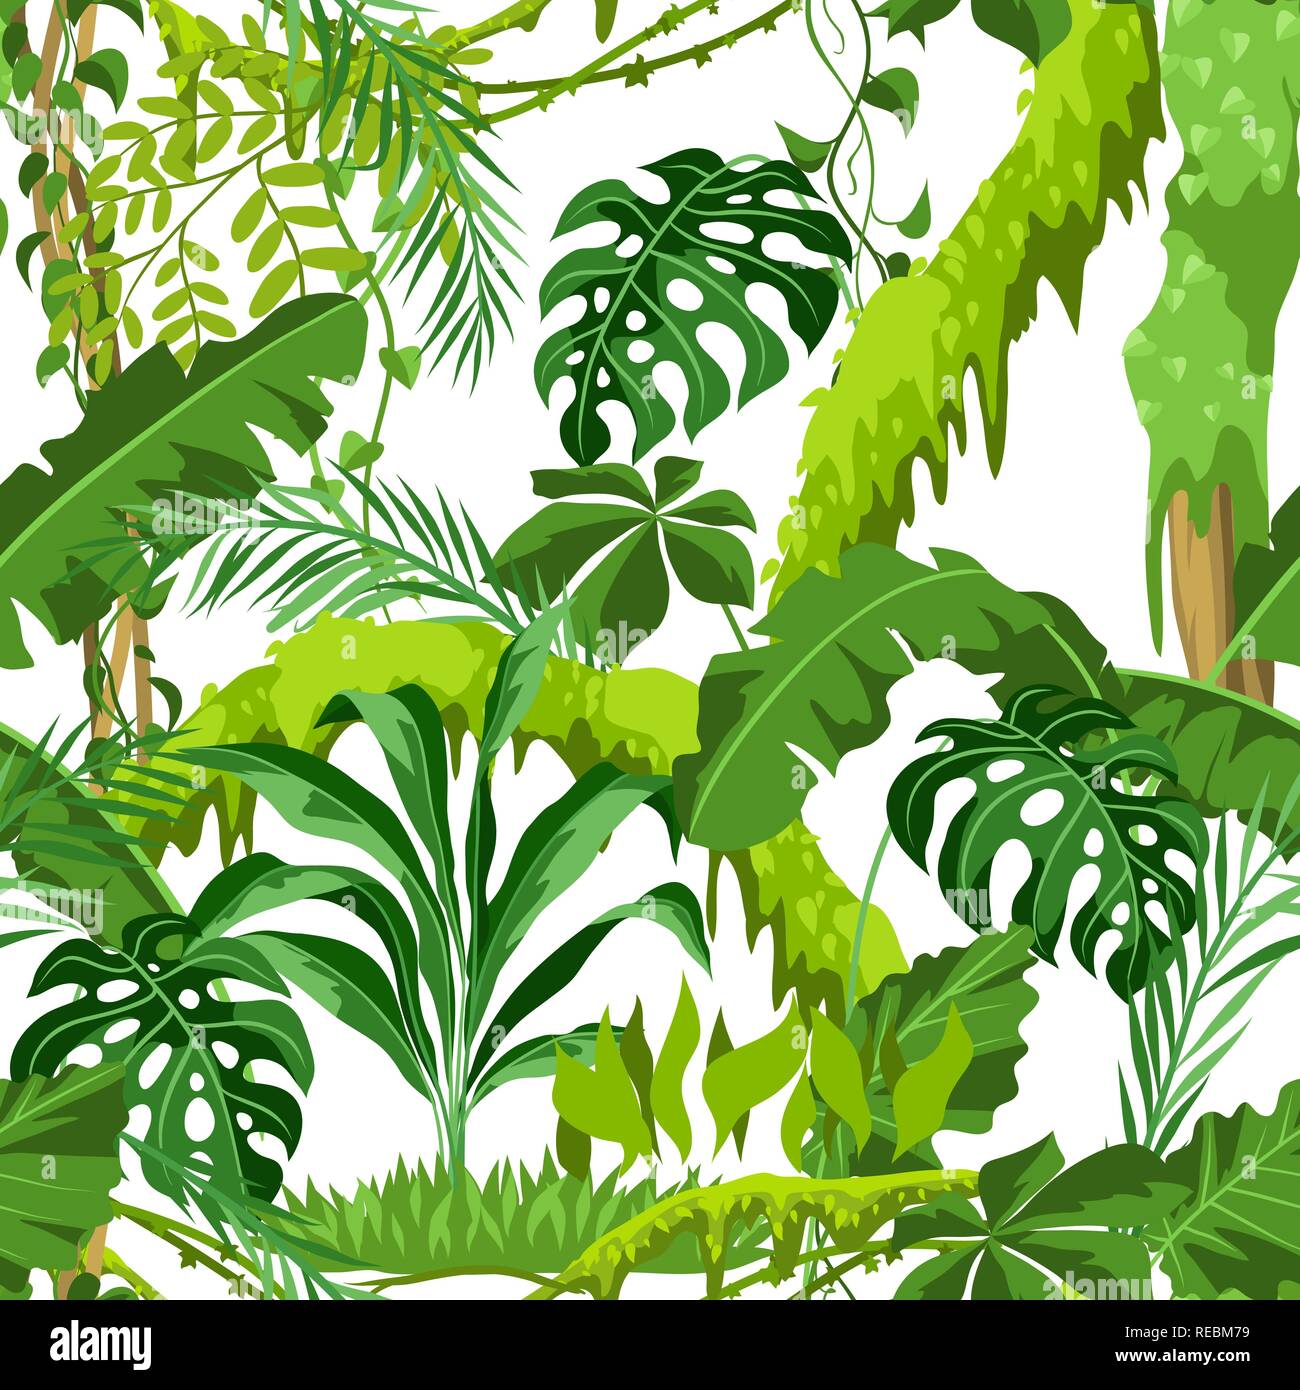 Nahtlose Muster mit Dschungel Pflanzen Stock-Vektorgrafik - Alamy